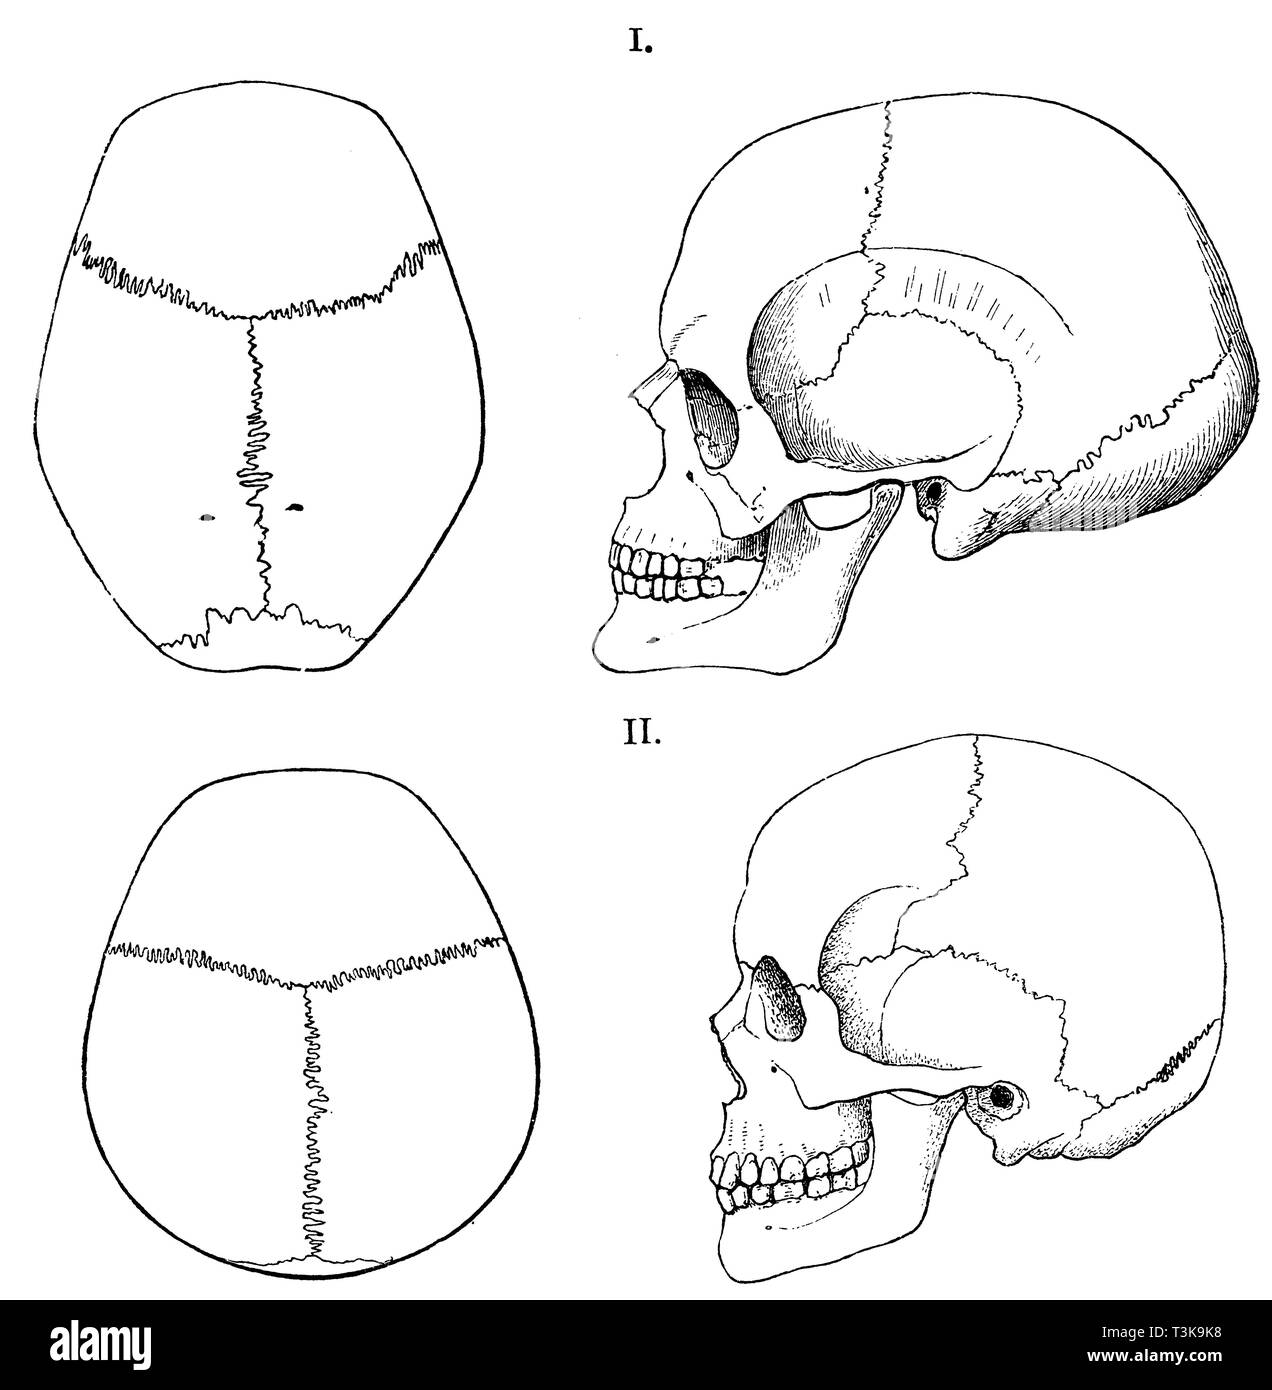 Cráneo humano: las formas de los dos tipos humanos que conforman la  población actual de Württemberg. I) moderadamente oblicua de cabeza larga,  de Stuttgart, ii) la cabeza recta corta, desde el Bosque